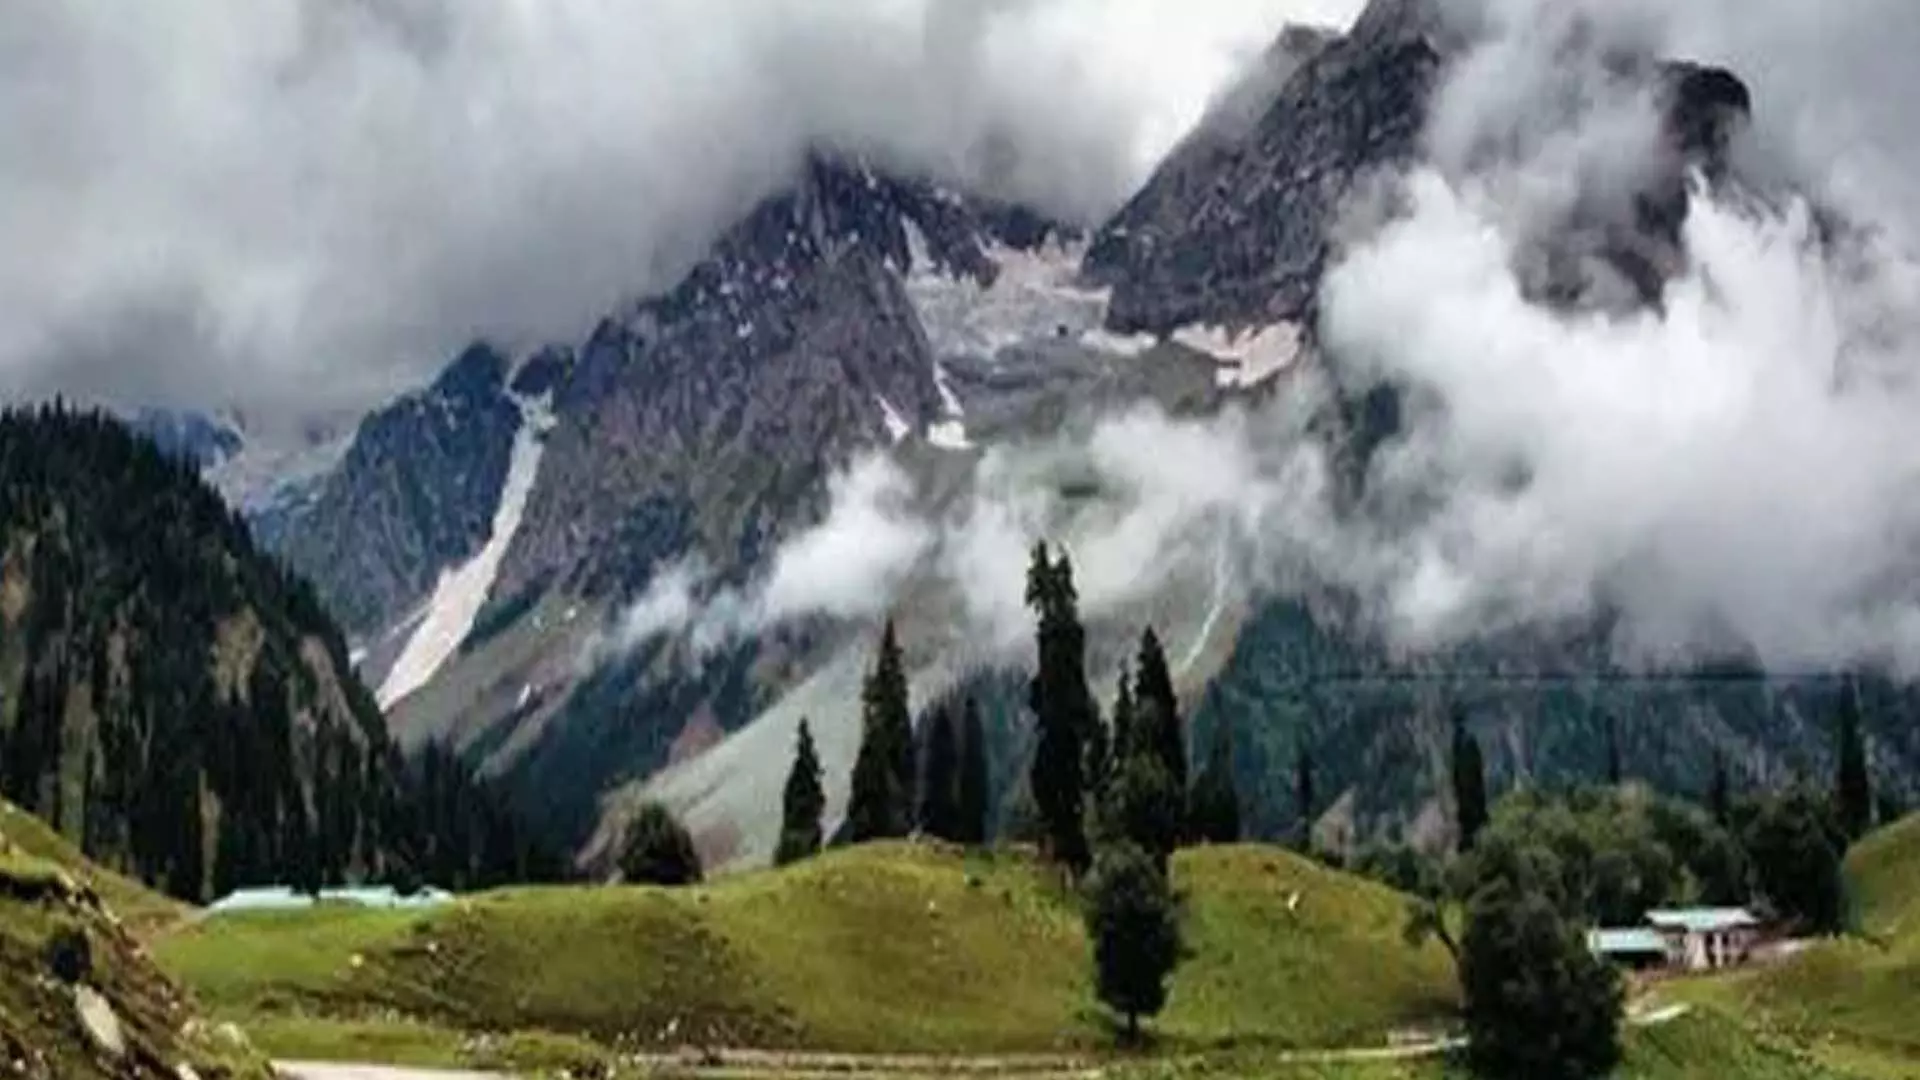 Srinagar: कश्मीर में अगले 9 दिनों तक लू नहीं चलेगी, मौसम विभाग